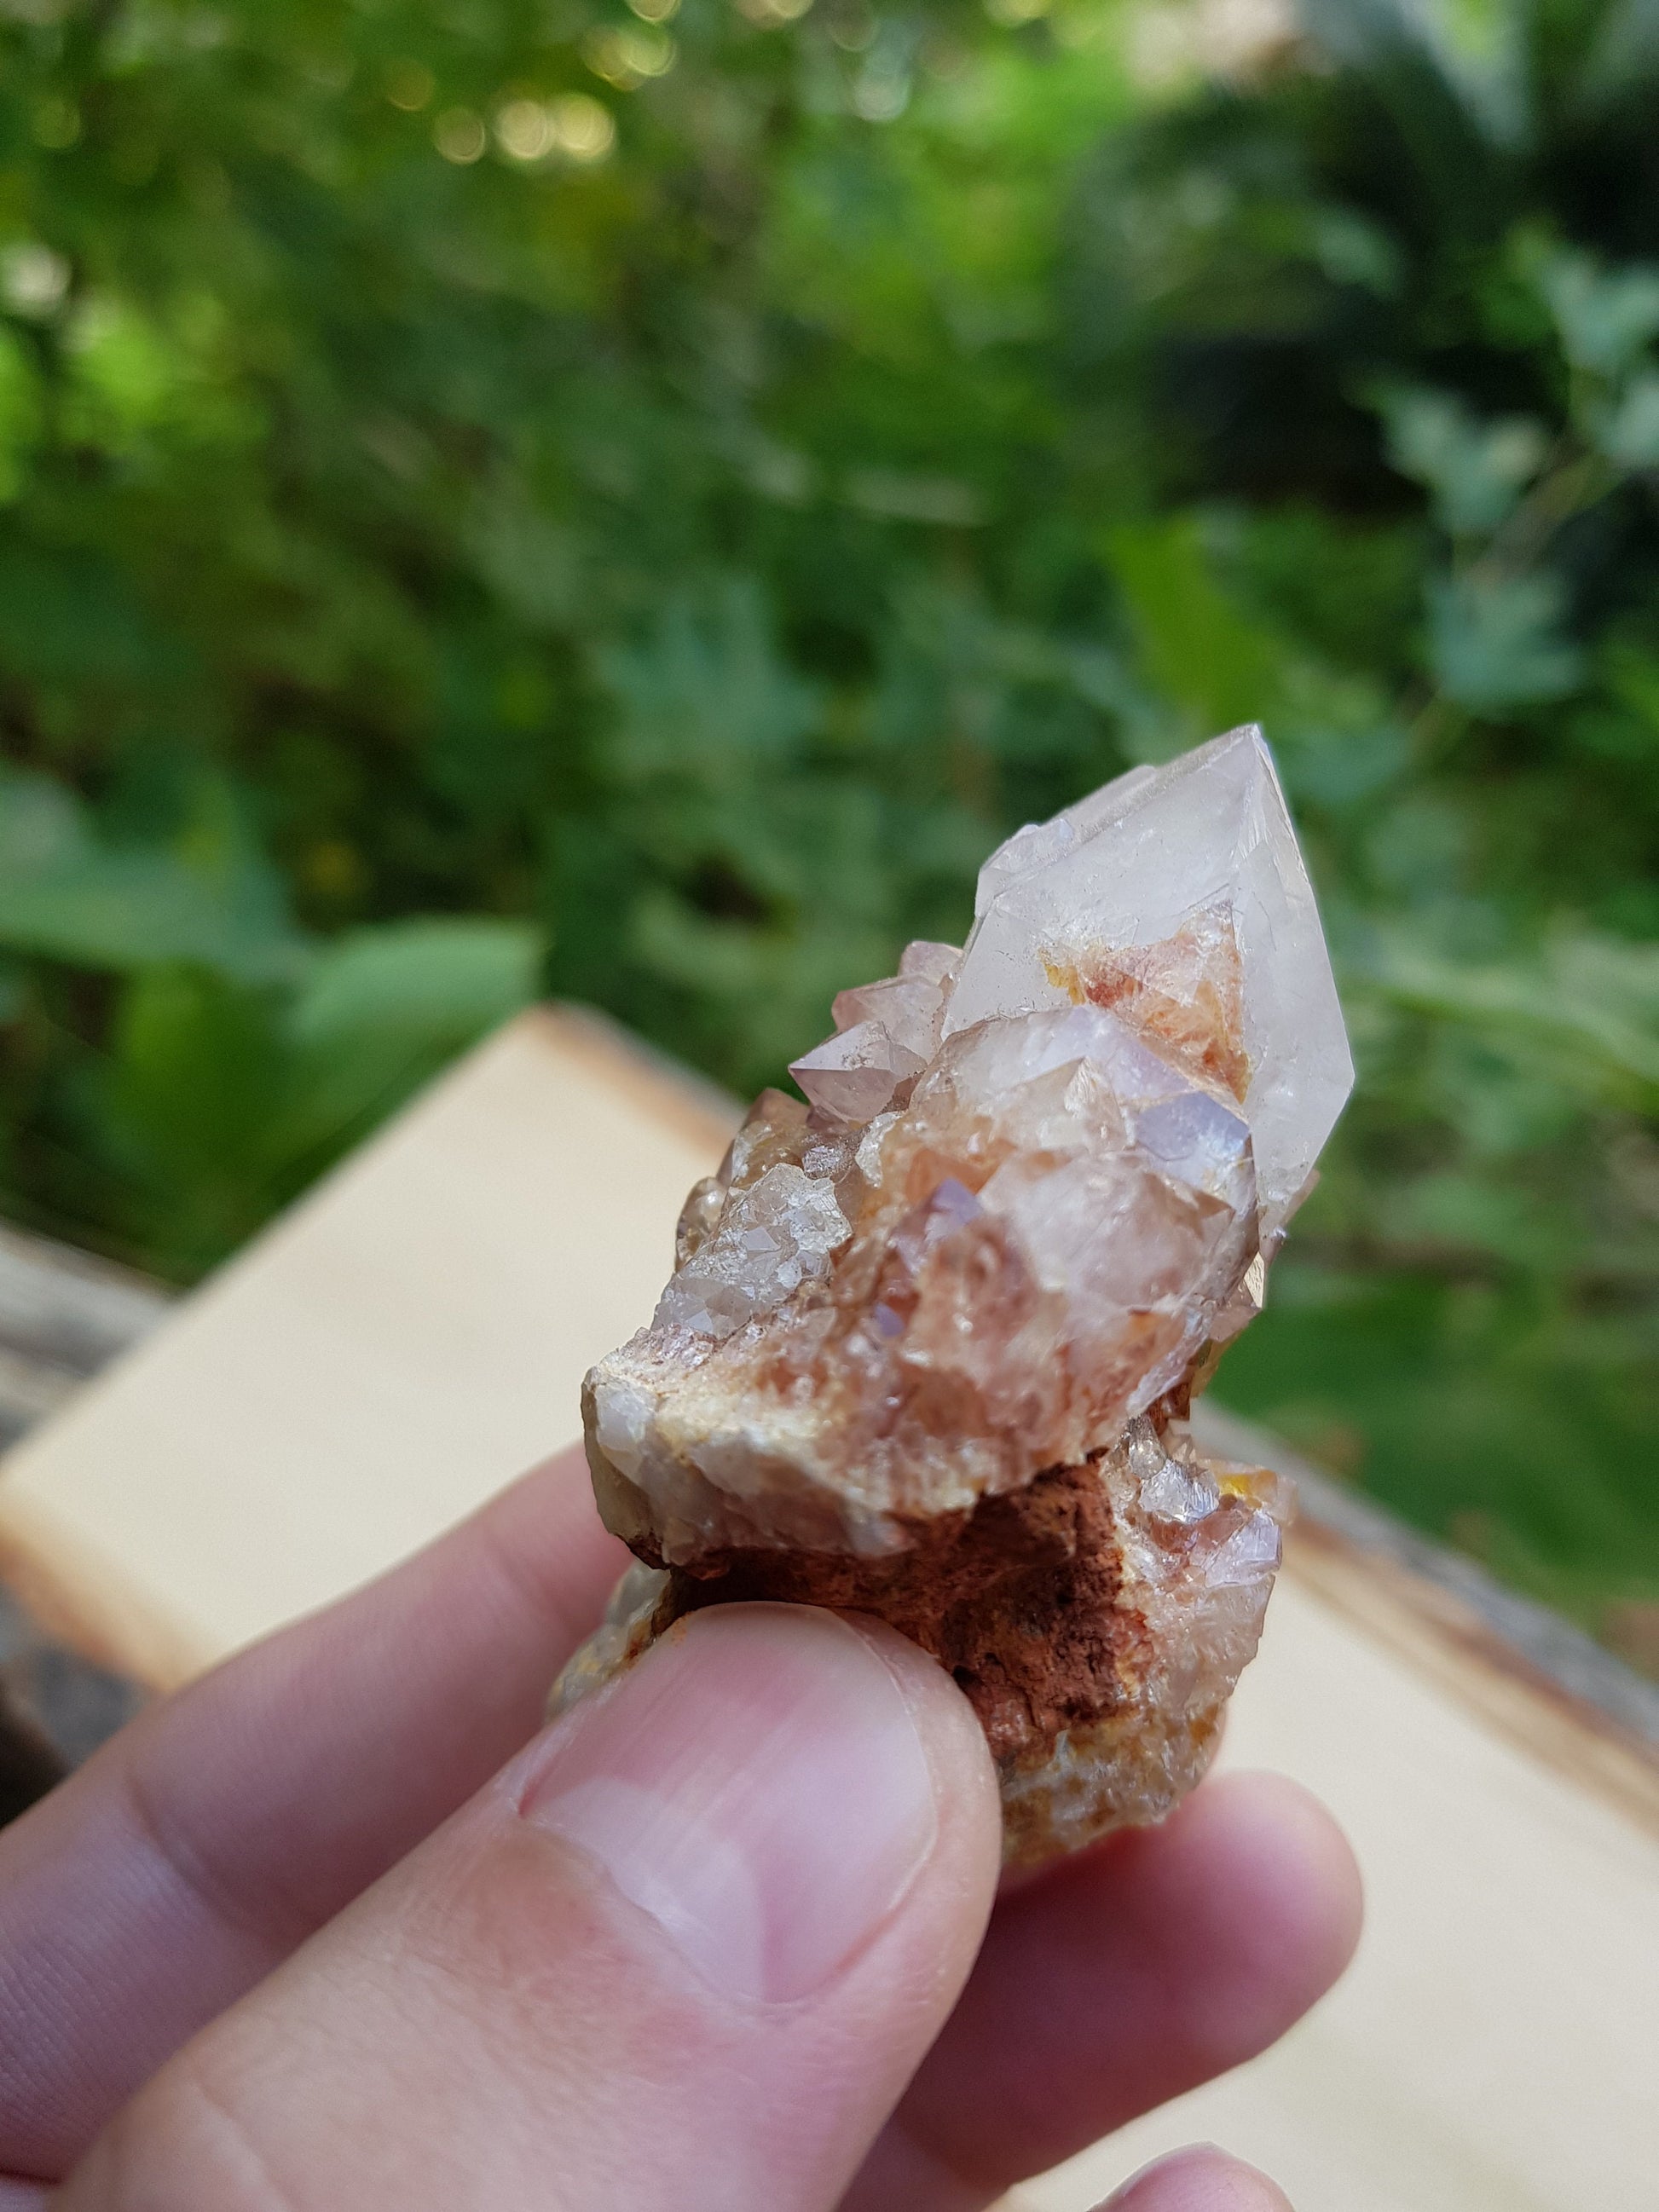 Amethyst Spirit Quartz , Amethyst Cactus Quartz, Crystals Rocks Minerals